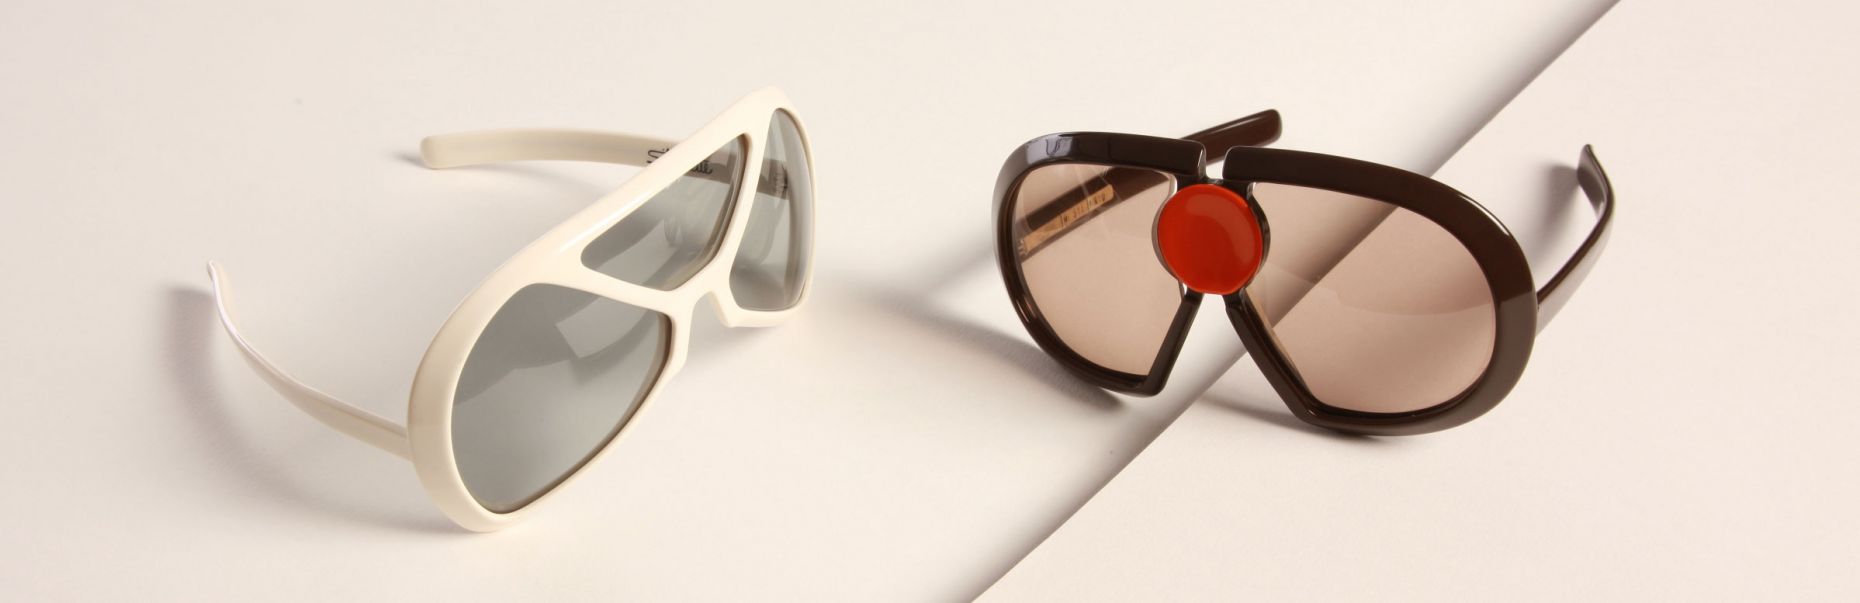 Außergewöhnliche Designerbrillen aus den 70ern: Futura Silhouette 570 und 571